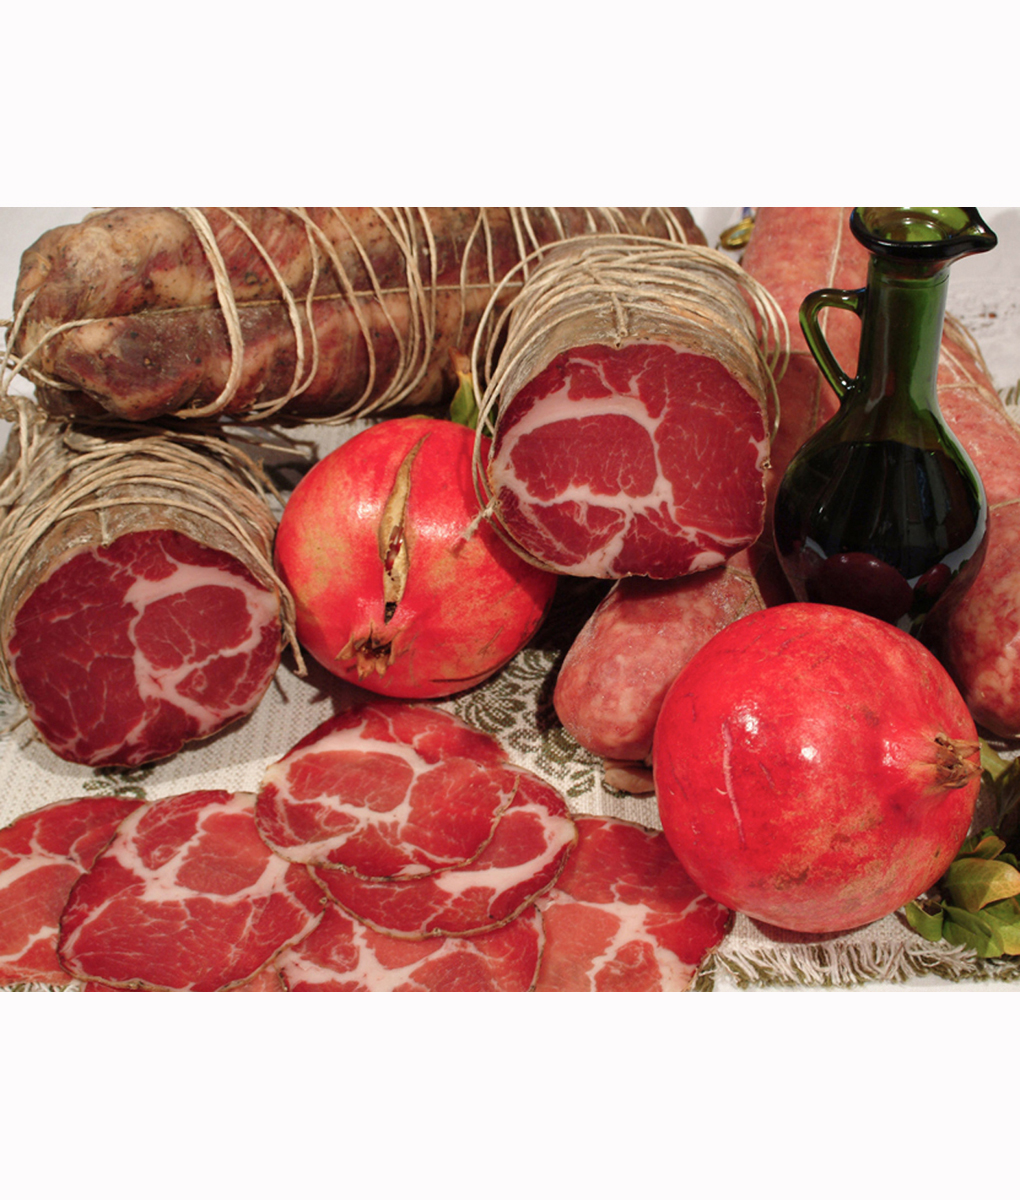 Seasoned lonza - Italian Cured Meat